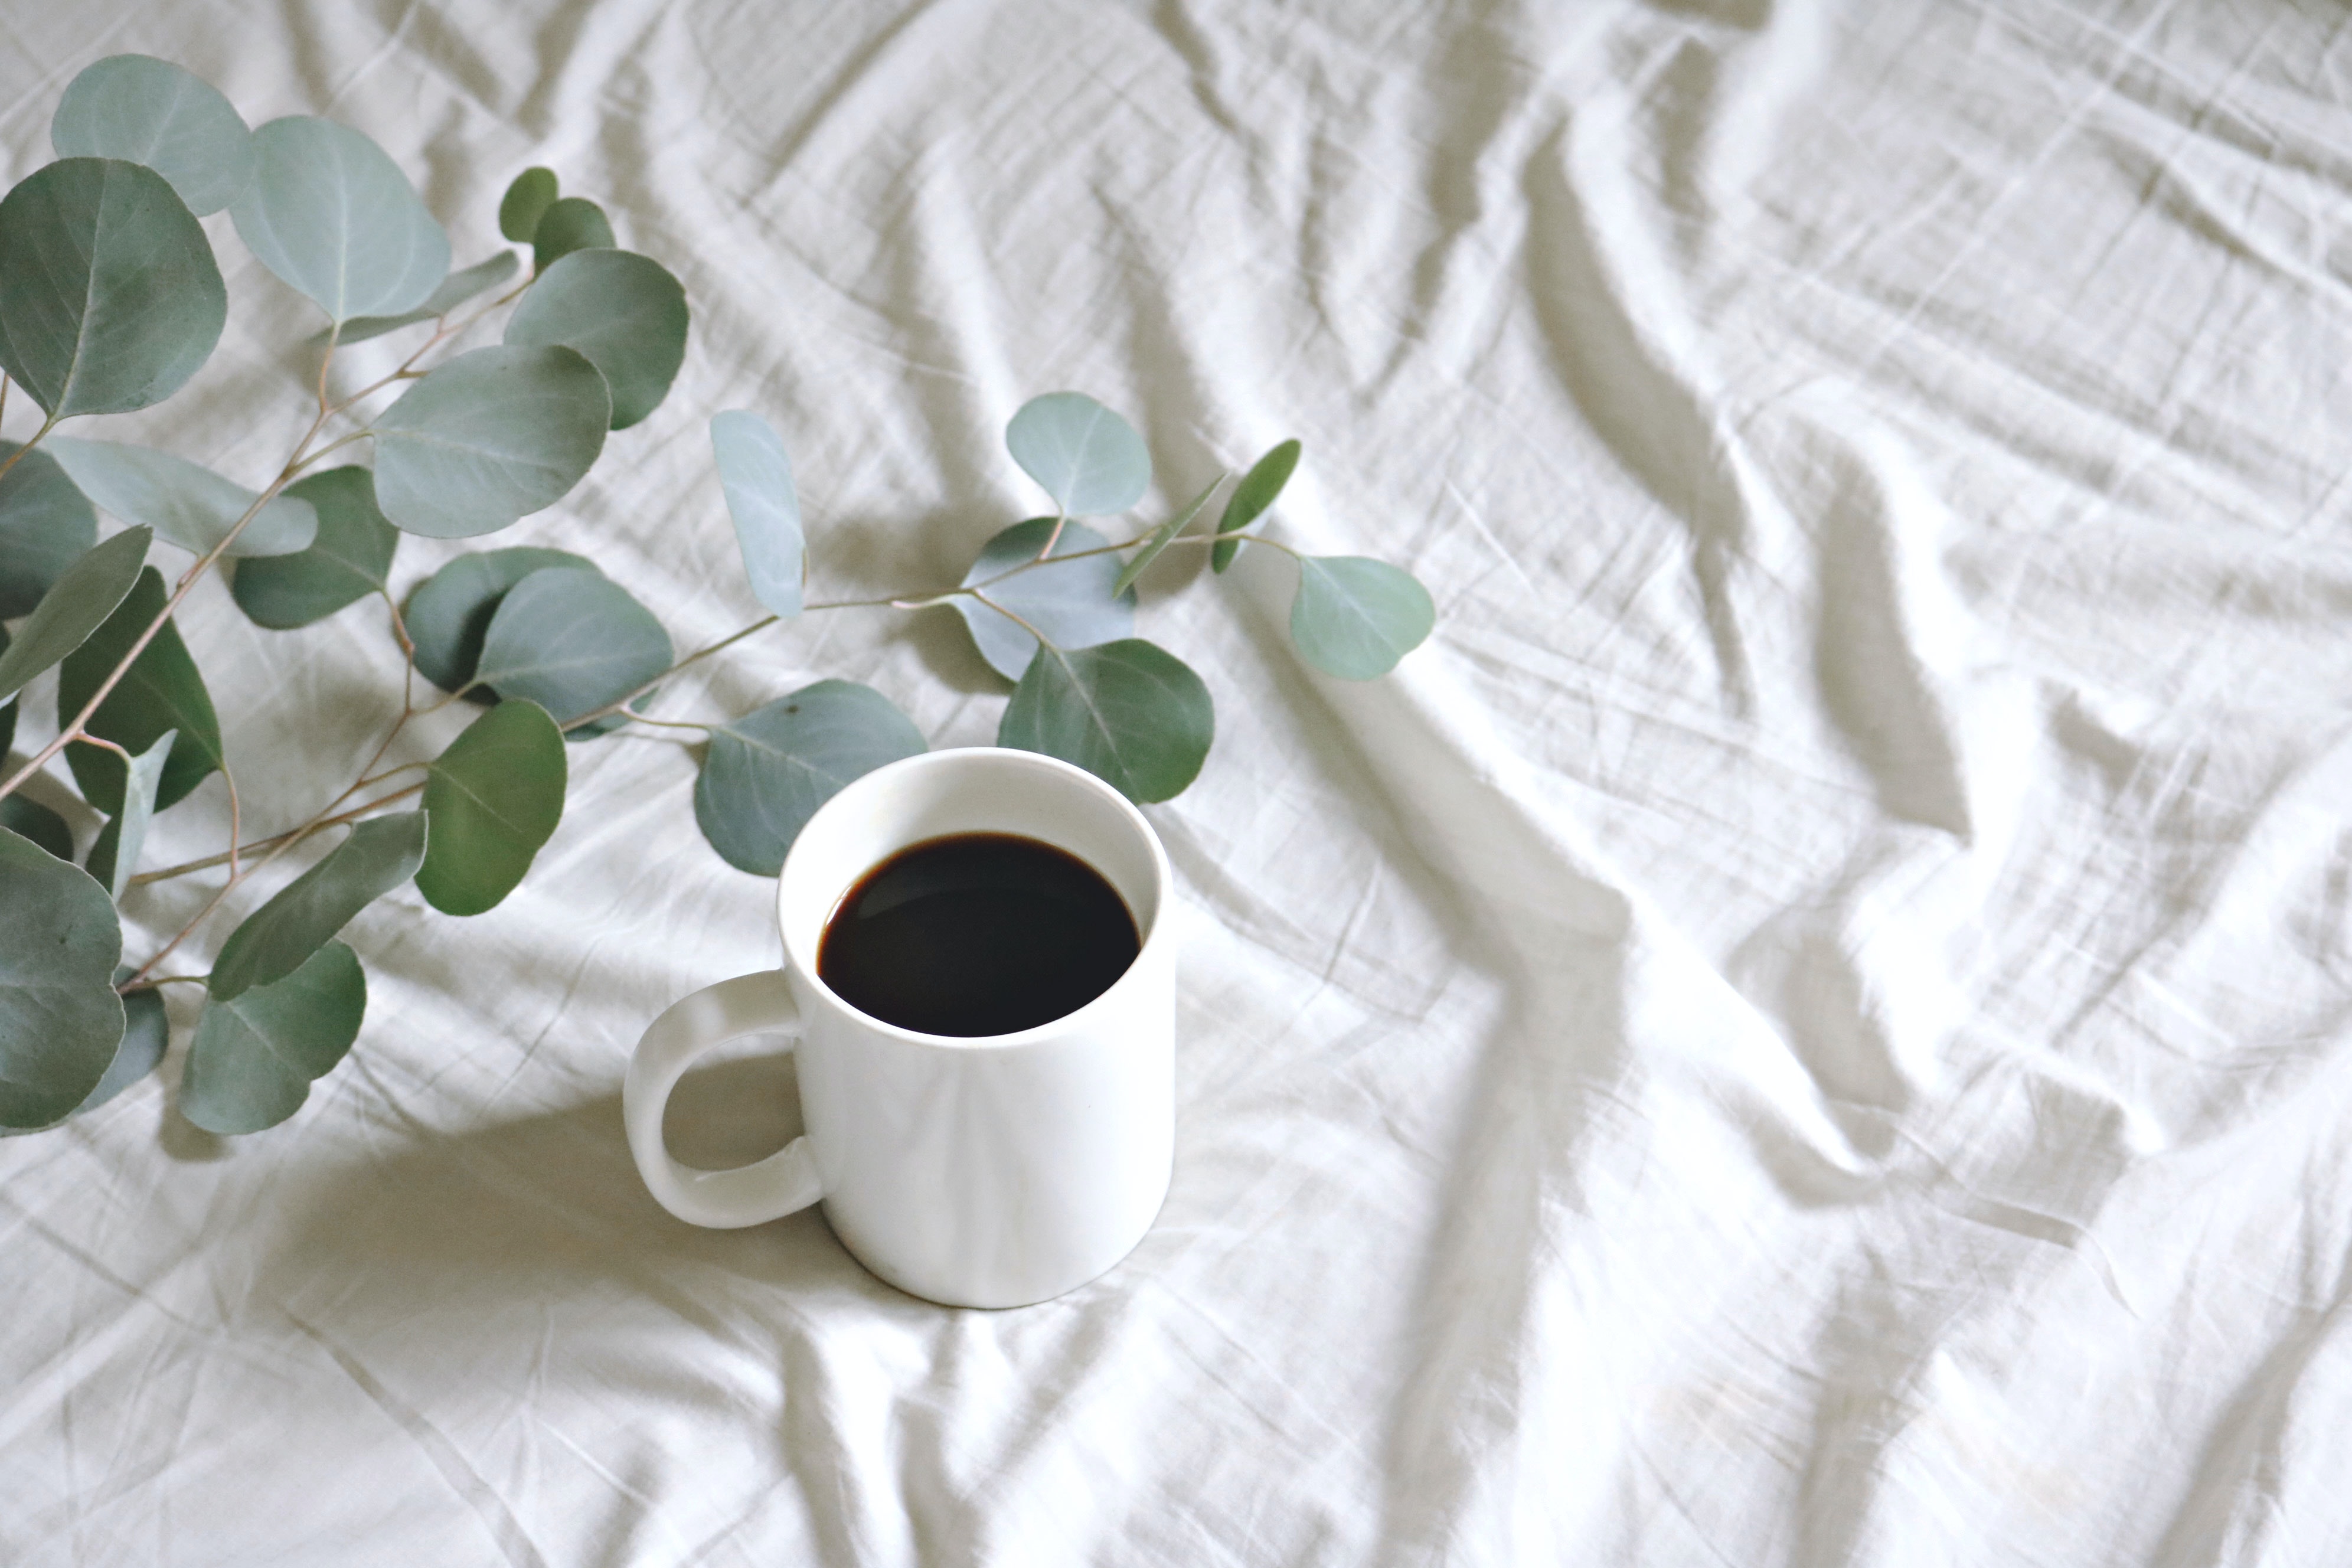 每天1-3杯咖啡可降低痛风风险22%，咖啡竟是降尿酸利器？